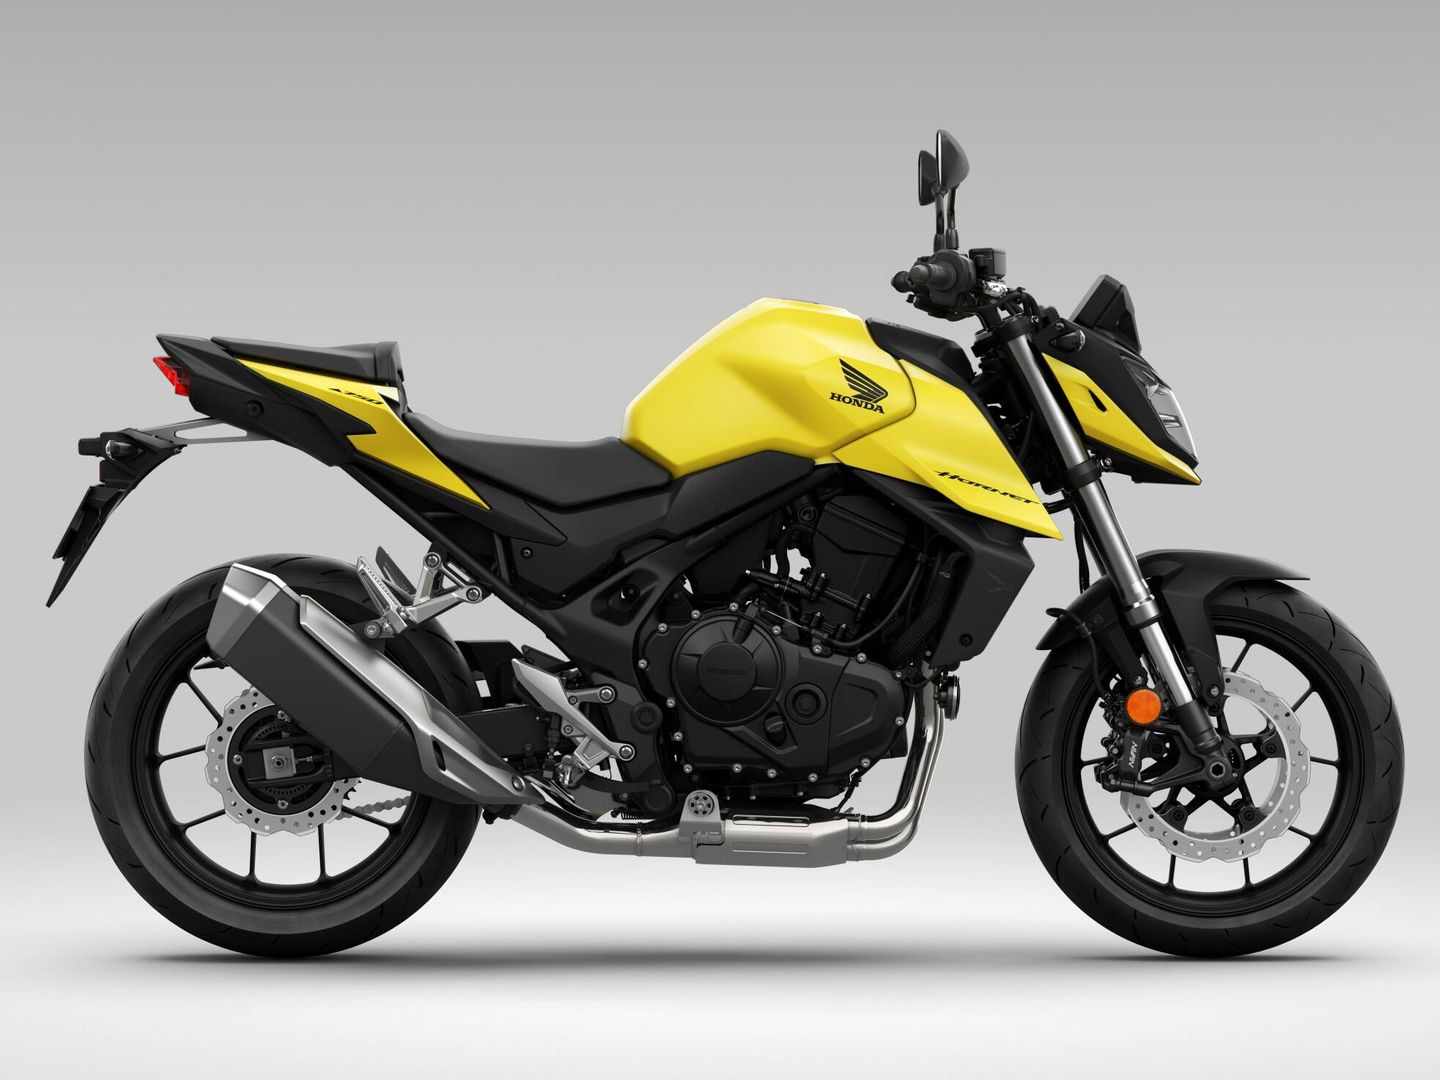 La Honda CB750 Hornet está disponible en cuatro colores, como un llamativo amarillo